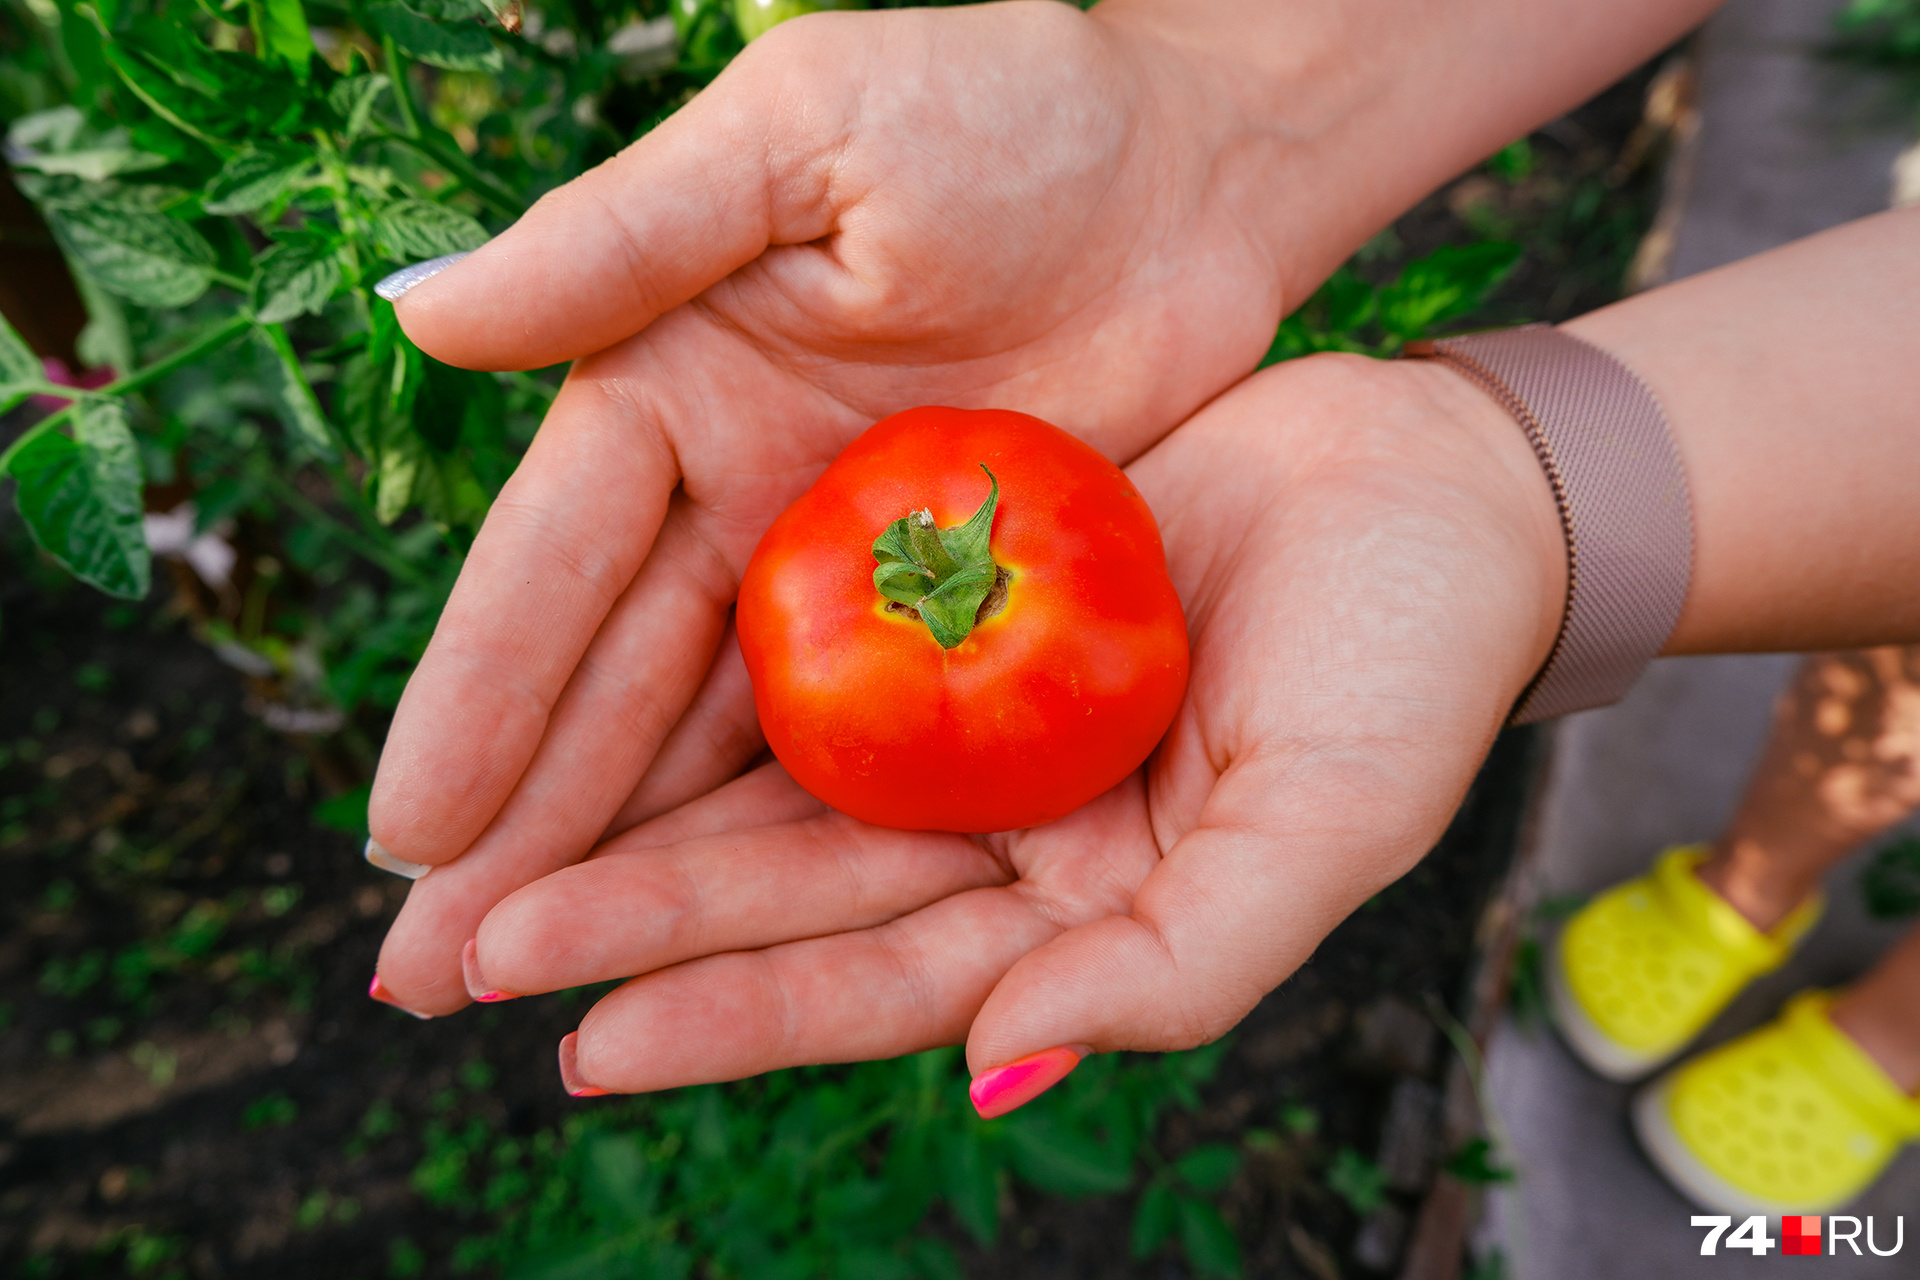 Опасность сочетания огурцов и помидоров в пище: почему это следует избегать